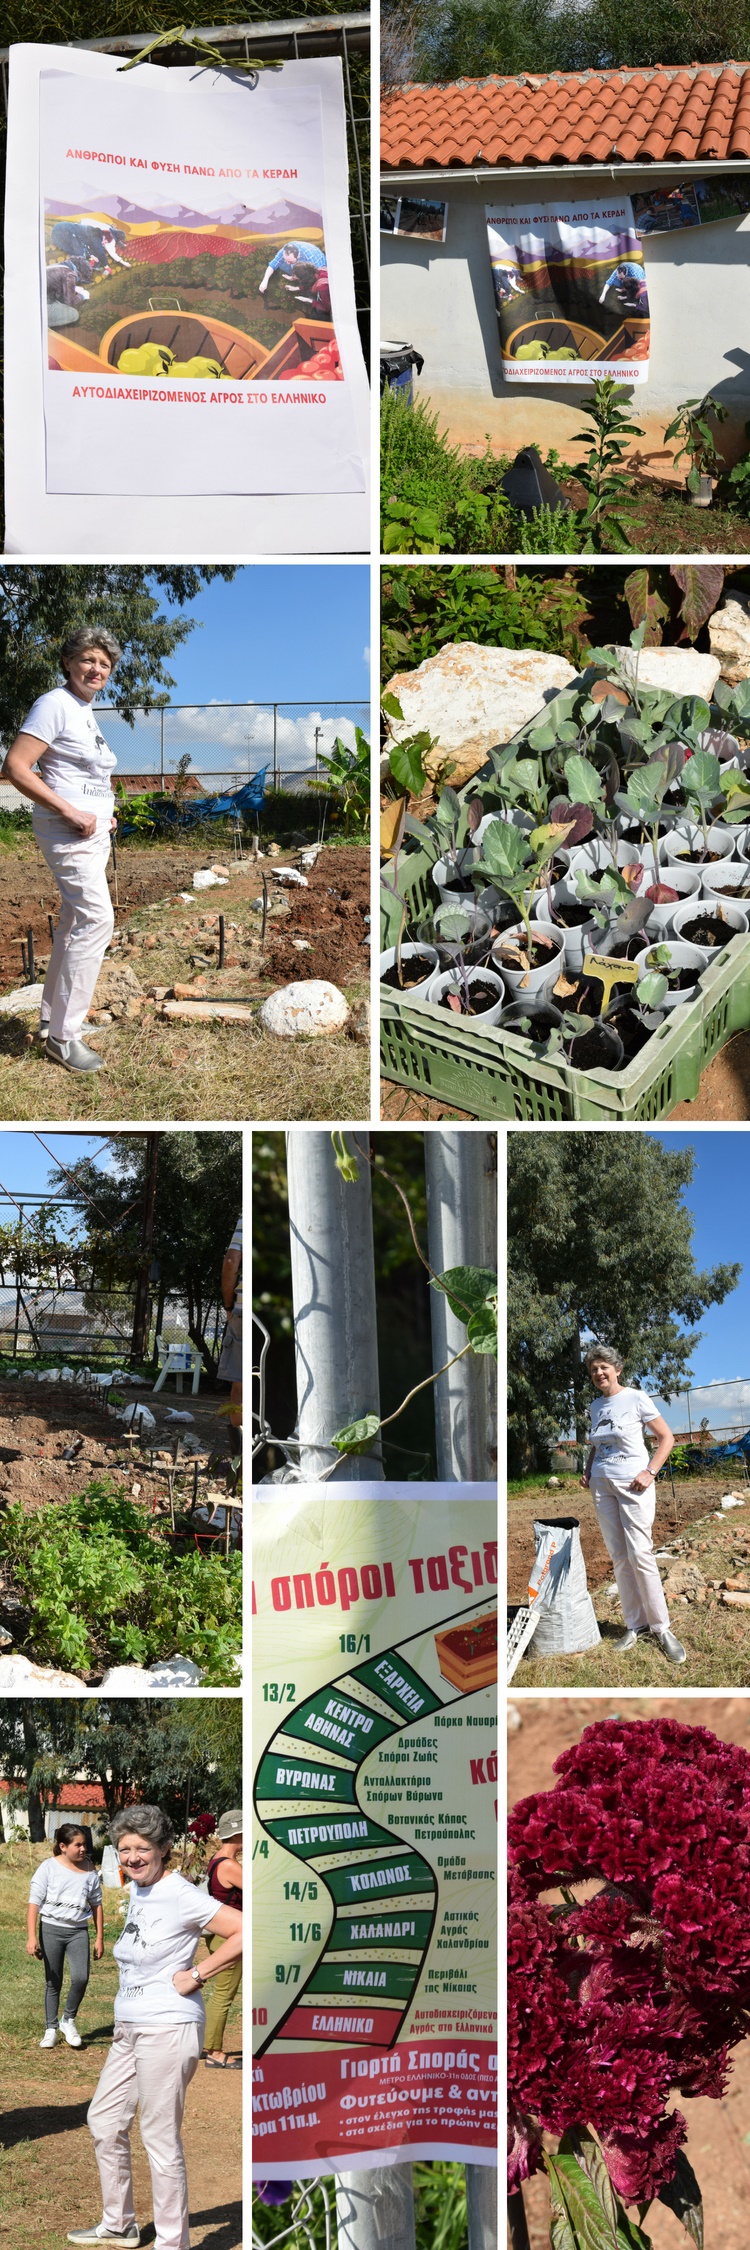 Η Ρίτα Χαριτάκη στον αυτοδιαχειριζόμενο αγρό του Ελληνικού - Φωτογραφίες στην Εναλλακτική Δράση